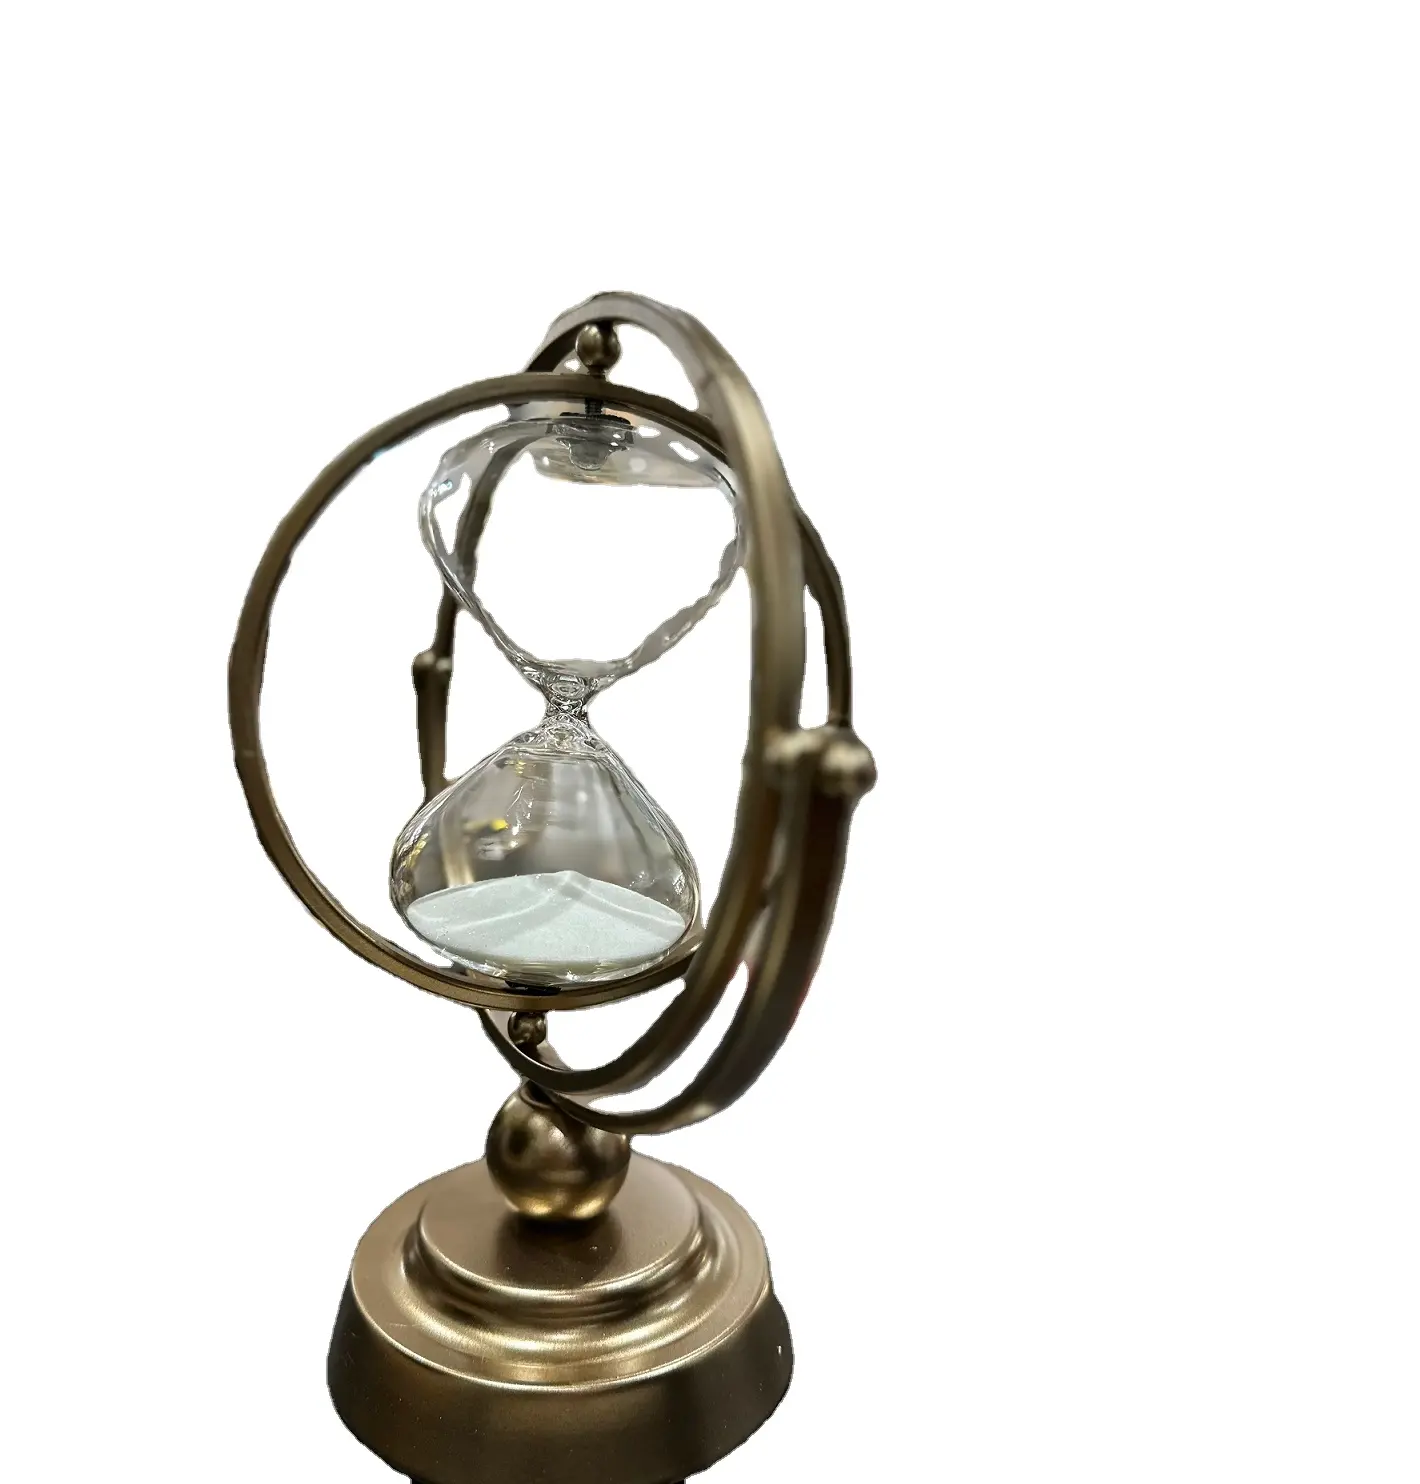 חדש דקורטיבי 30 דקות שעון חול מסתובב גלובוס עתיק מתכת חול טיימר שעון שעון חול טיימר התאמה אישית מודרנית המחיר הטוב ביותר